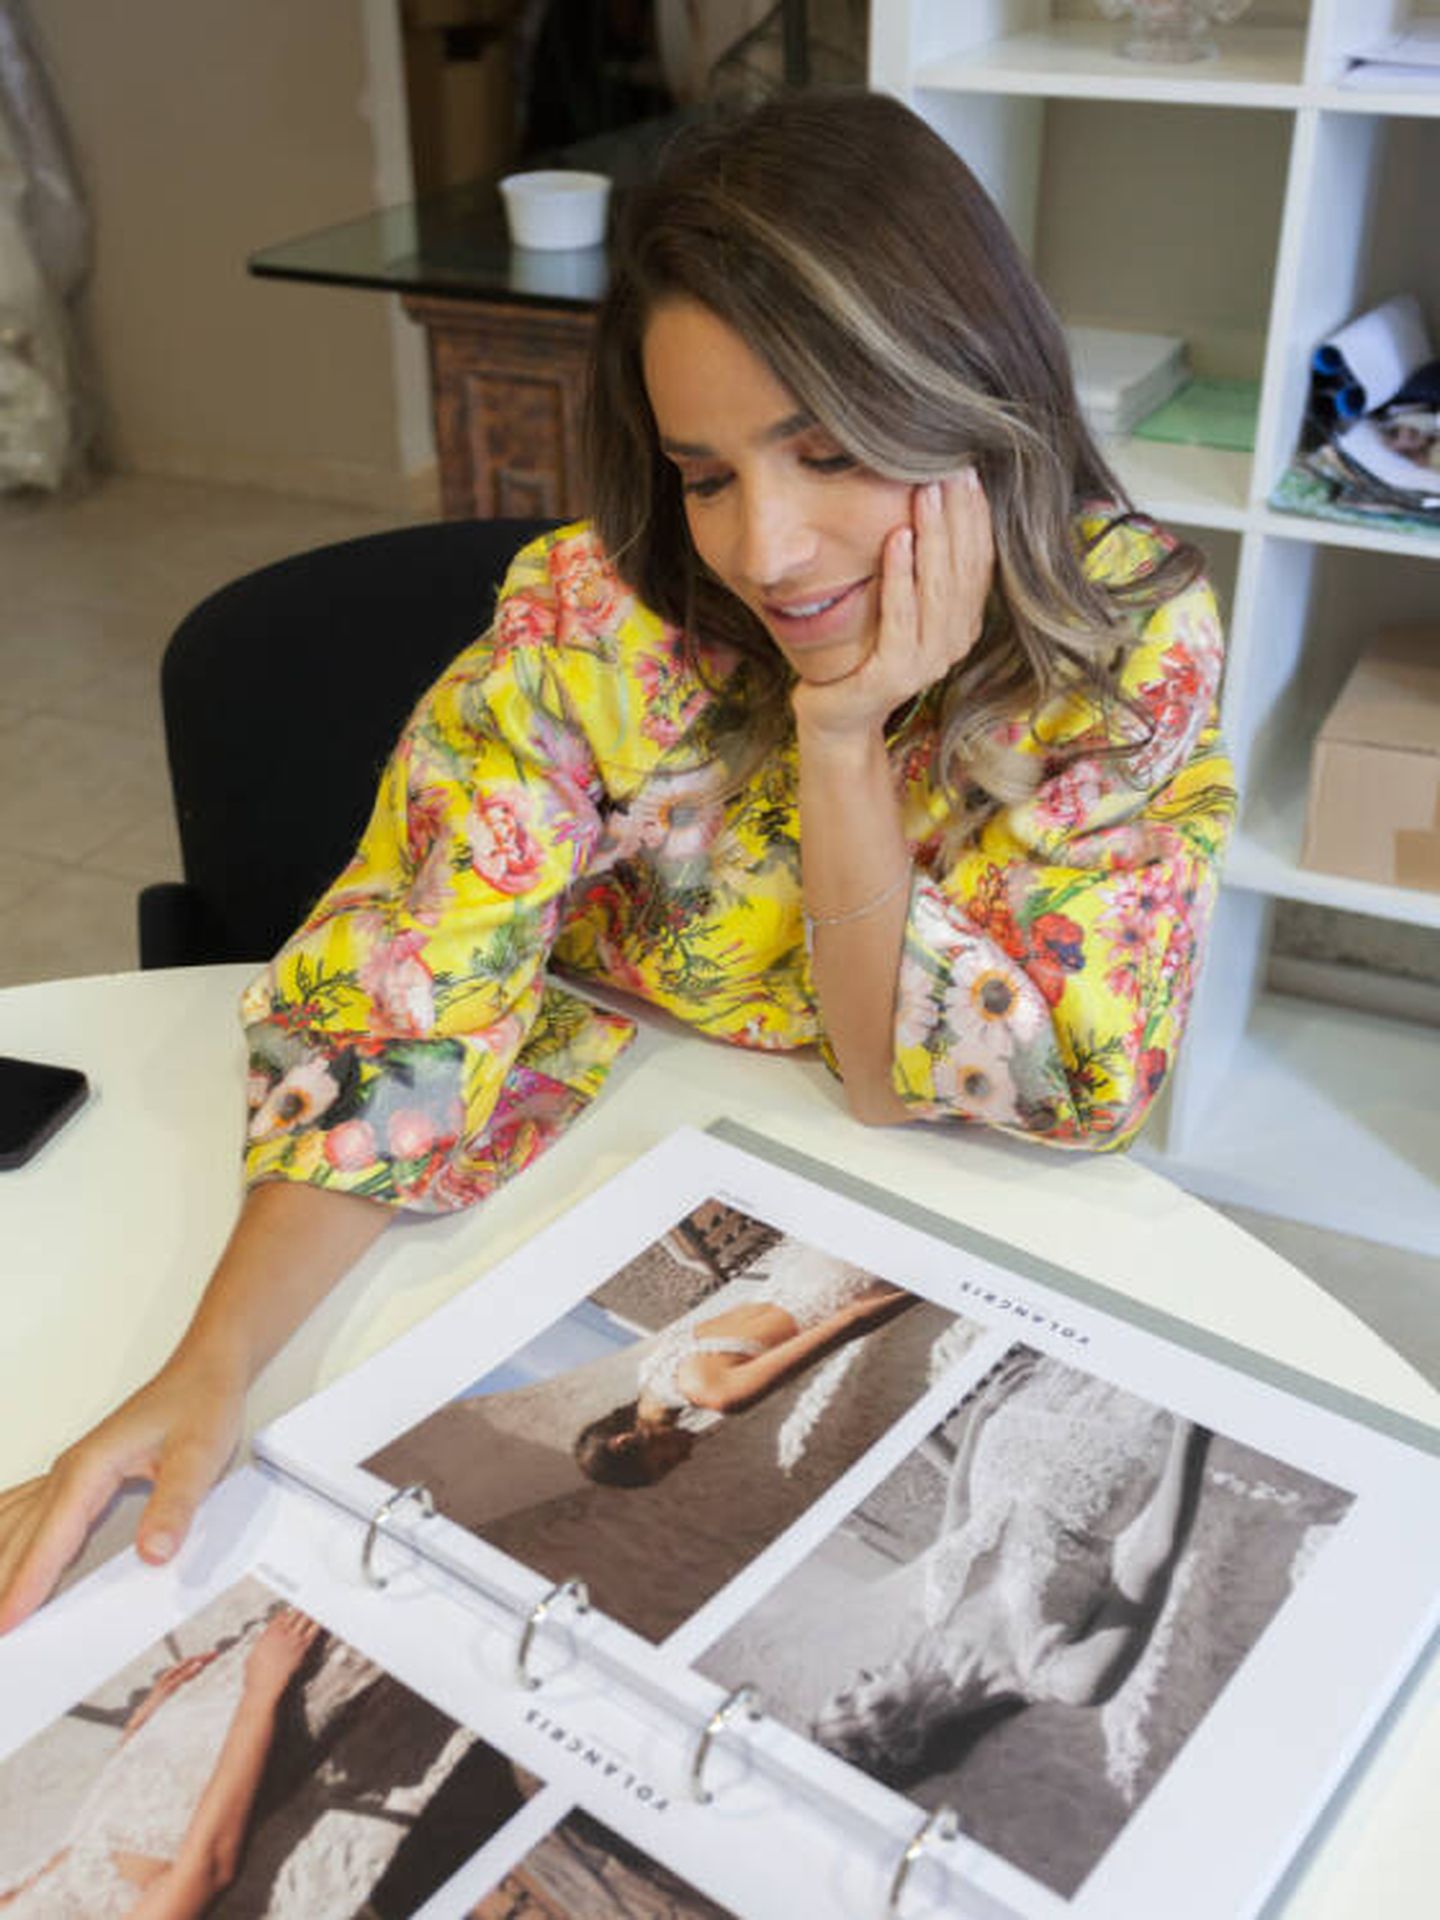 Flora González observa un catálogo de moda nupcial de Yolancris. (Sebastiá Vivo)